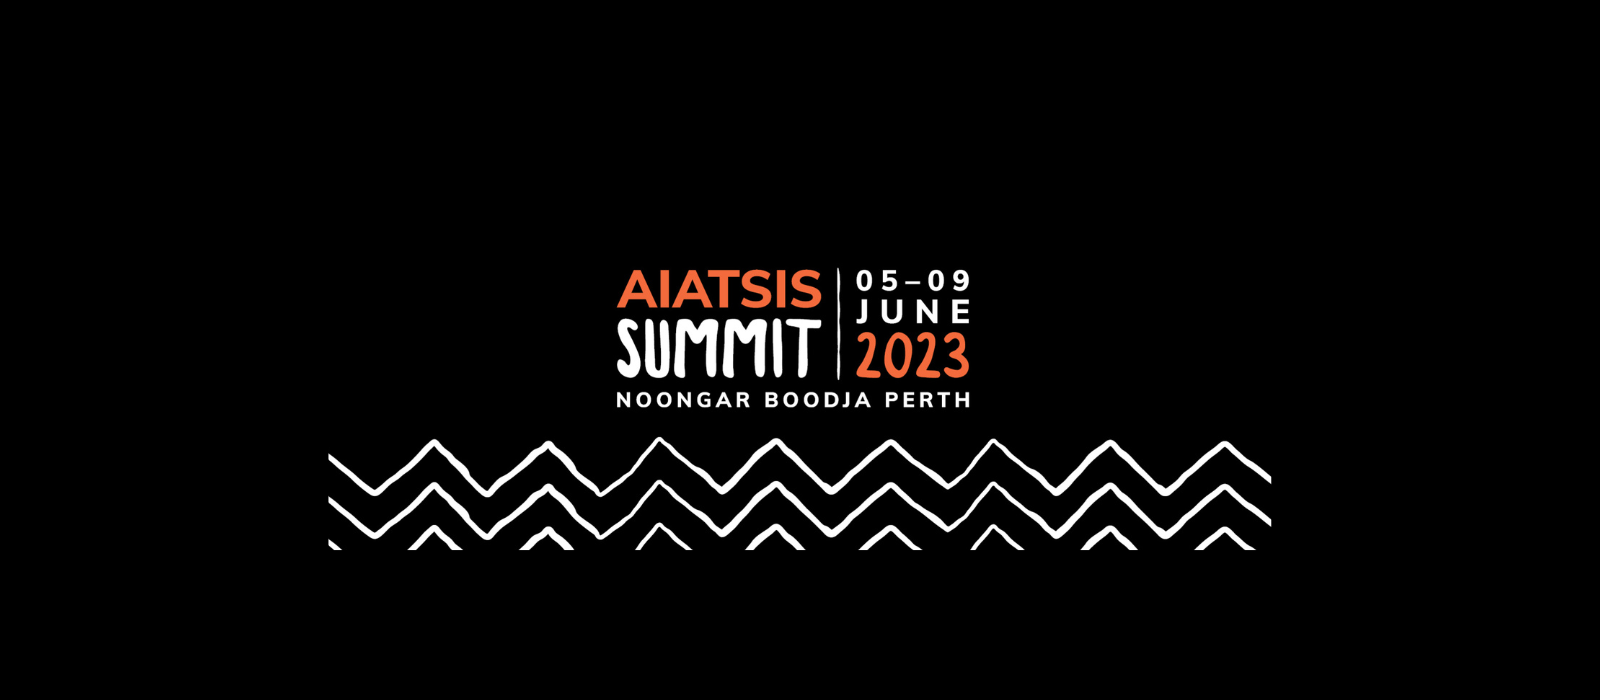 AIATSIS Summit 2023